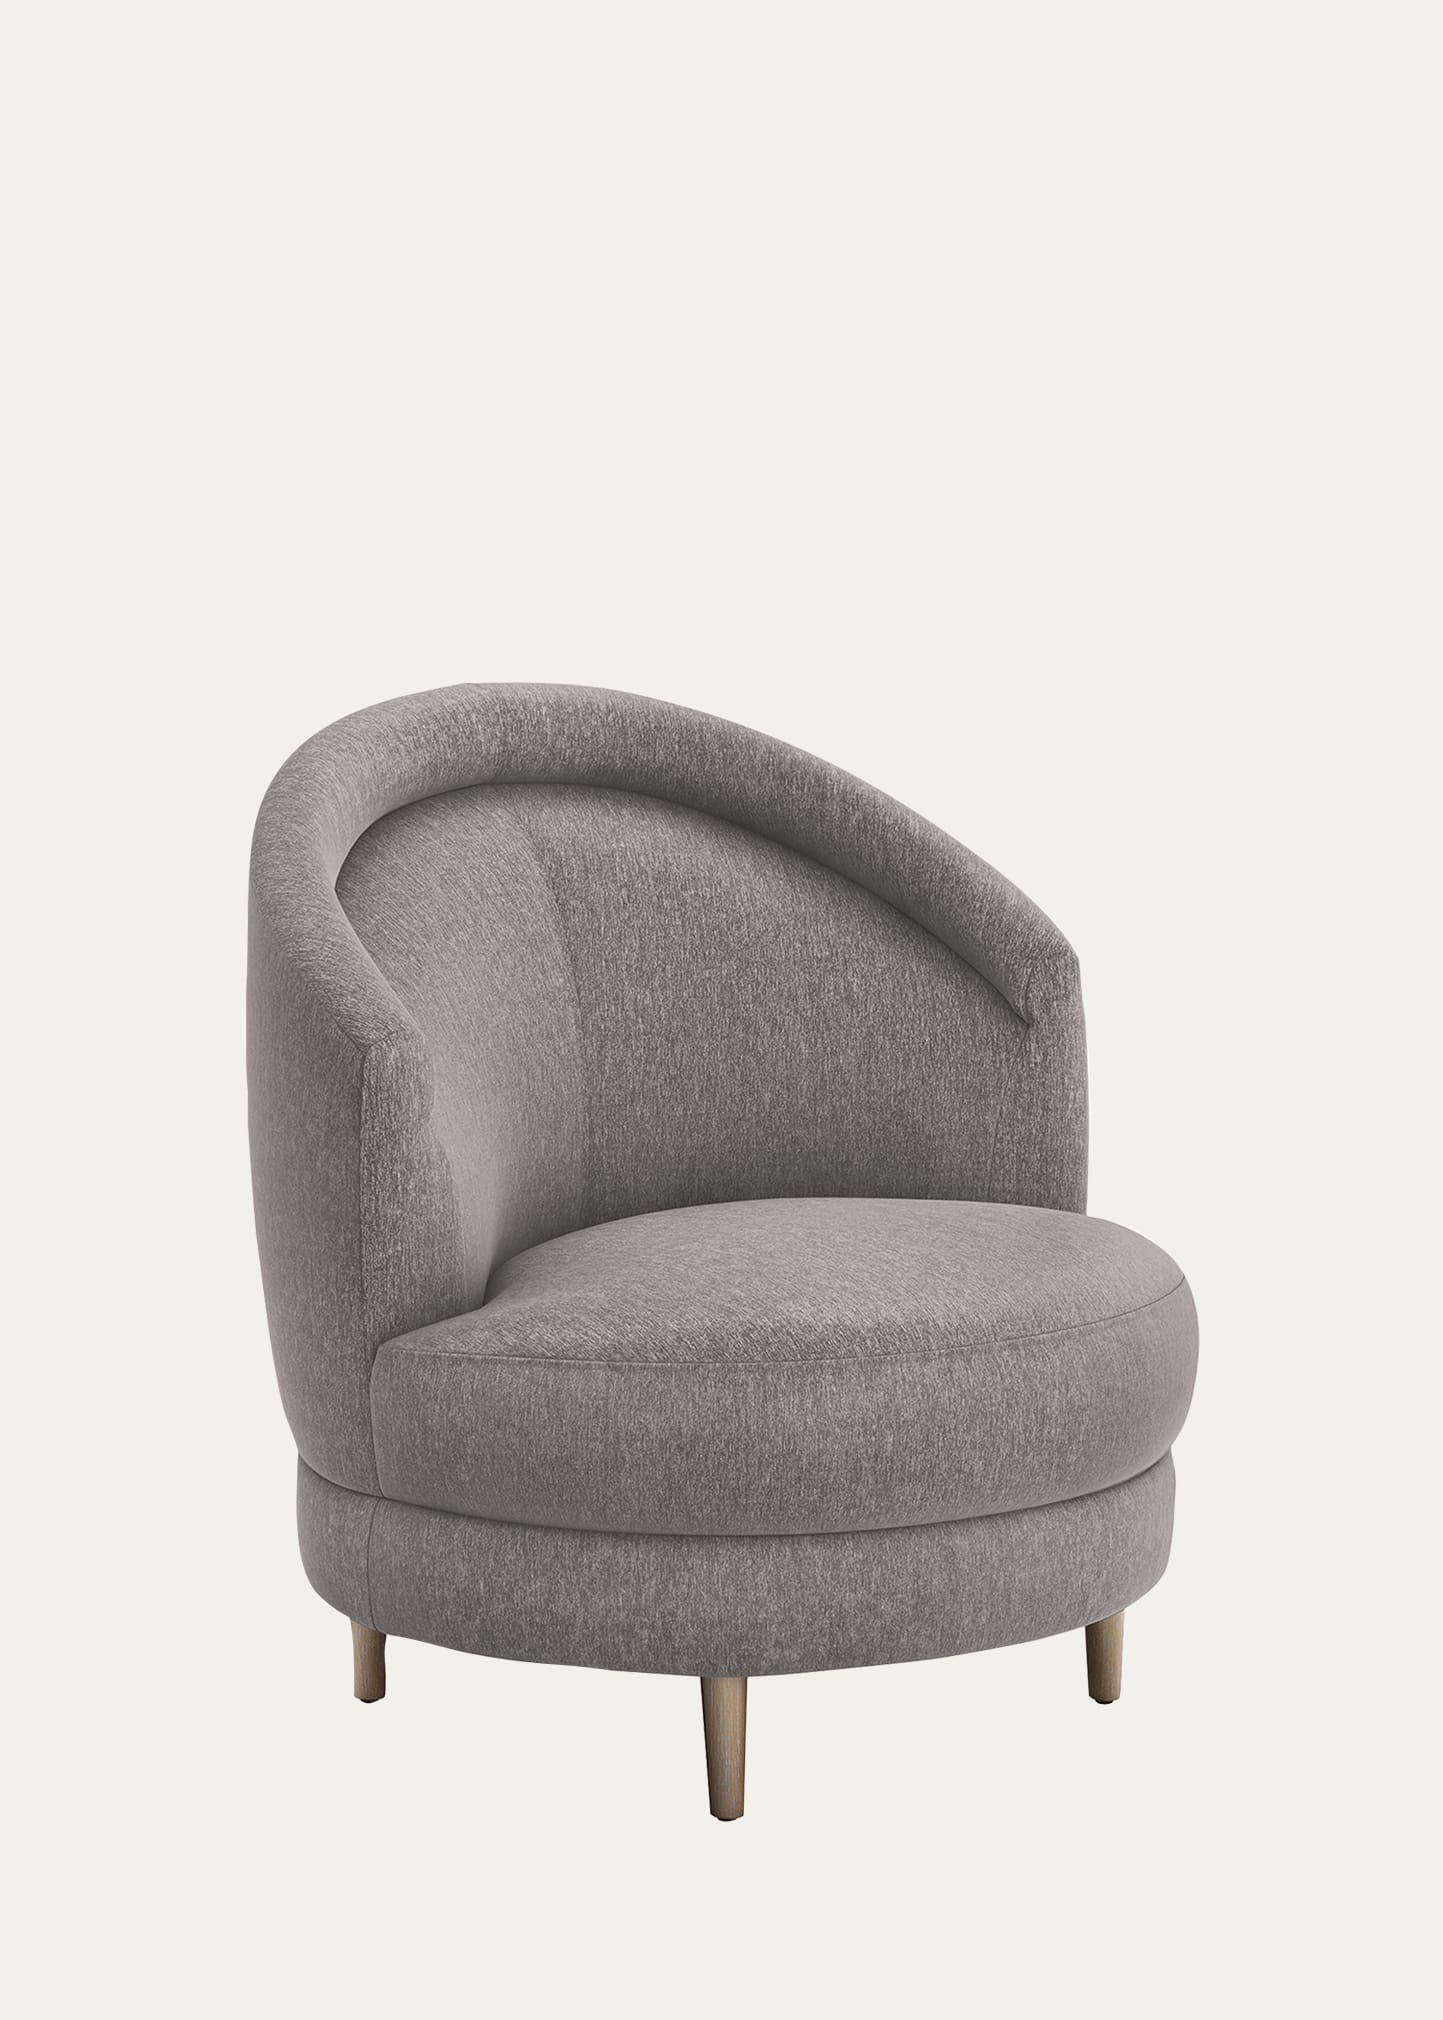 Interlude Home Capri Swivel Chair In Gray